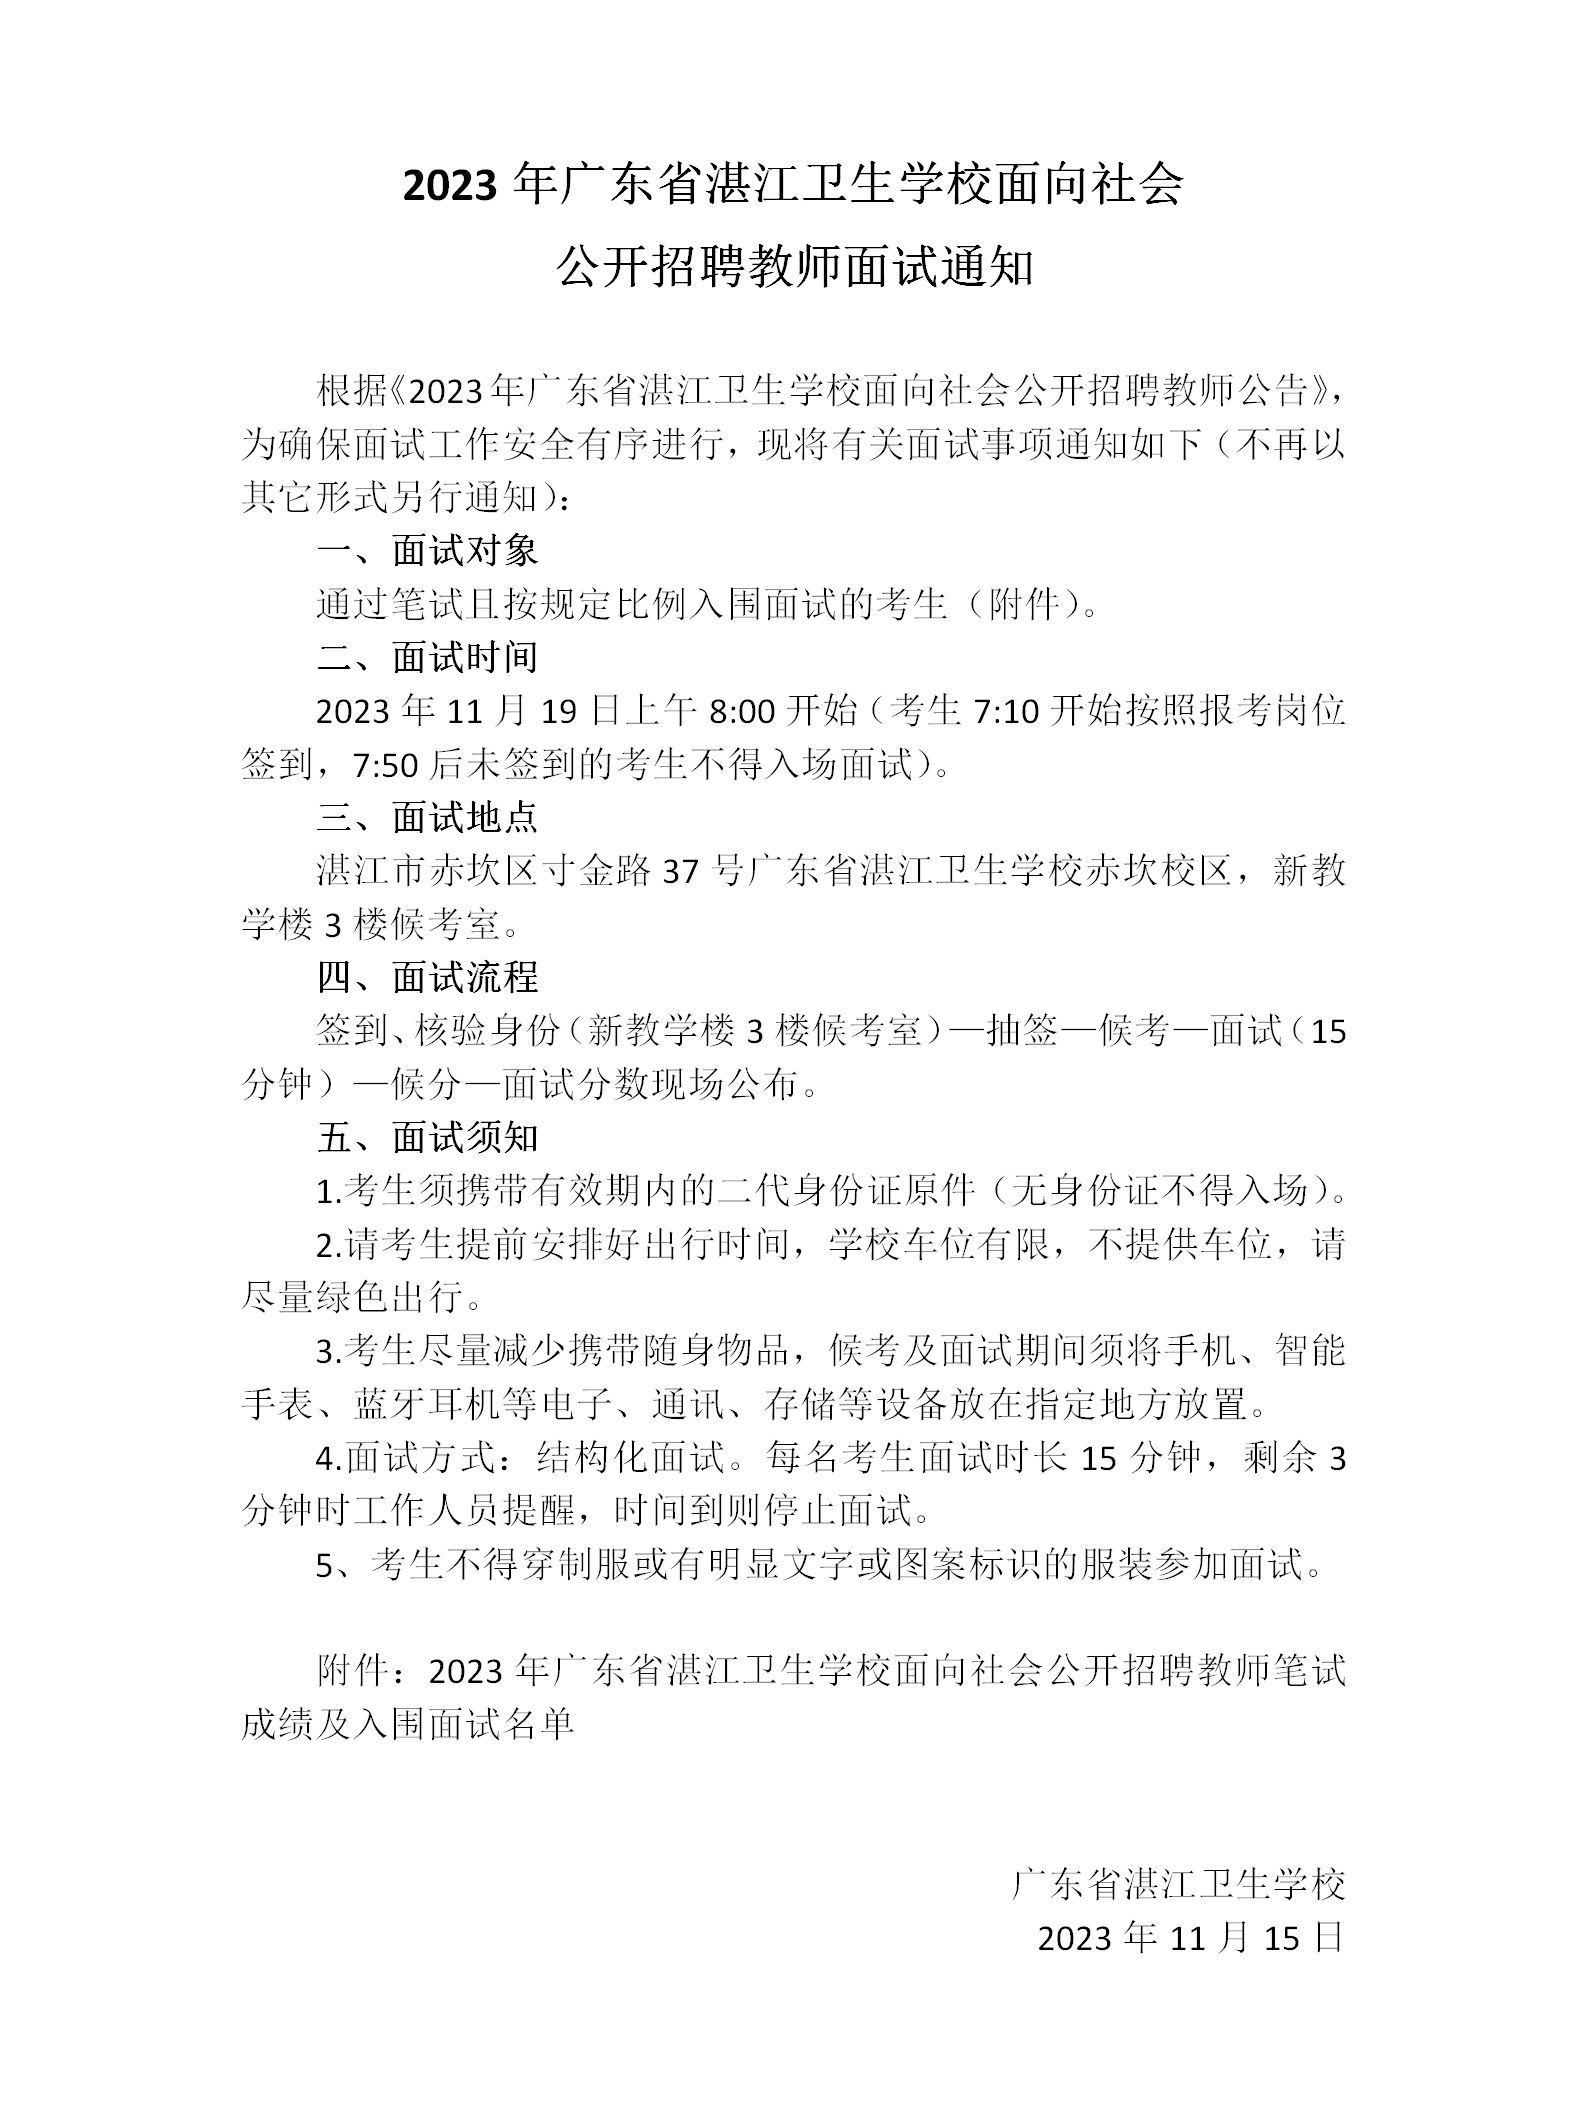 2023年广东省湛江卫生学校面向社会公开招聘教师面试通知_01.png